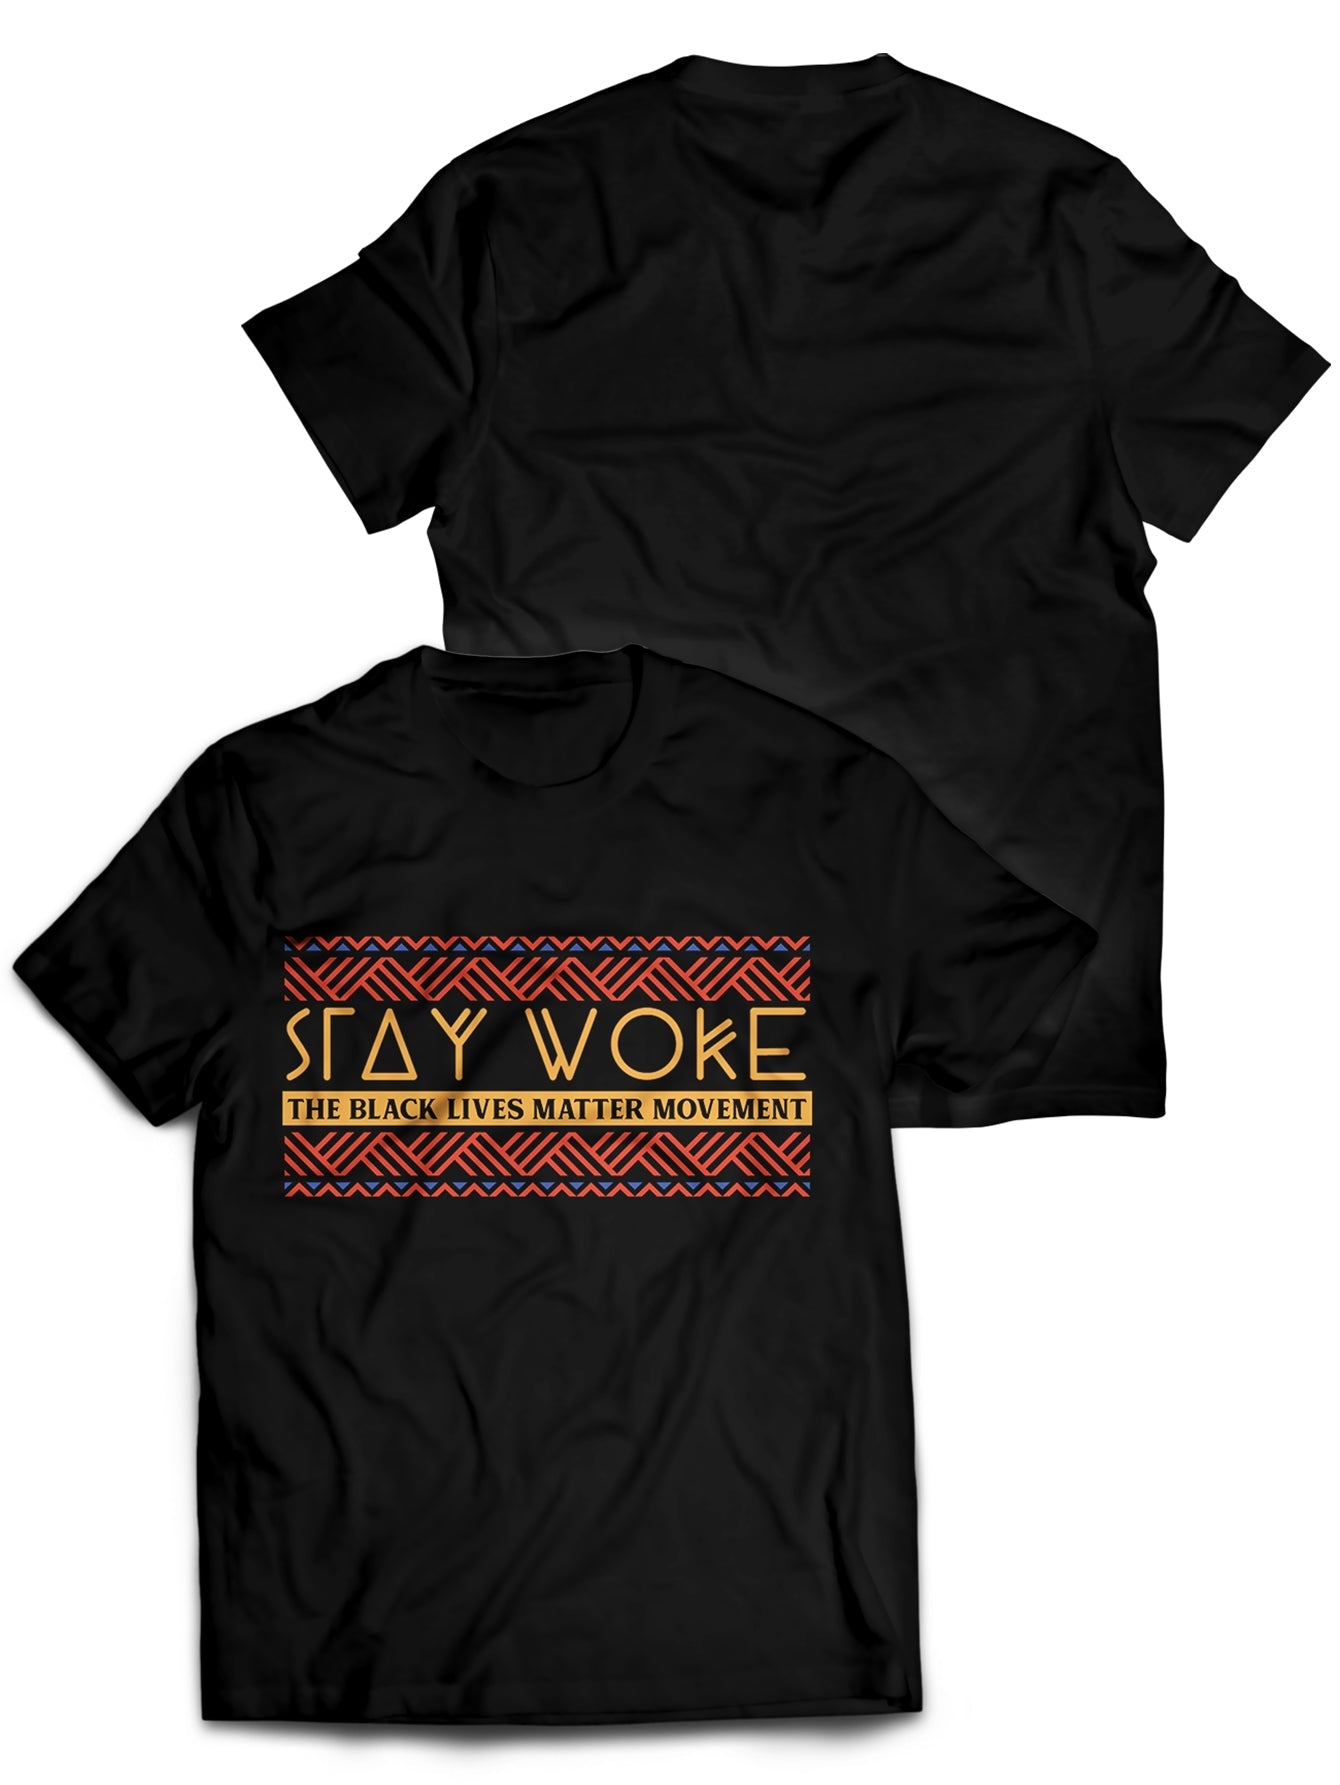 Fandomaniax - Stay Woke Unisex T-Shirt